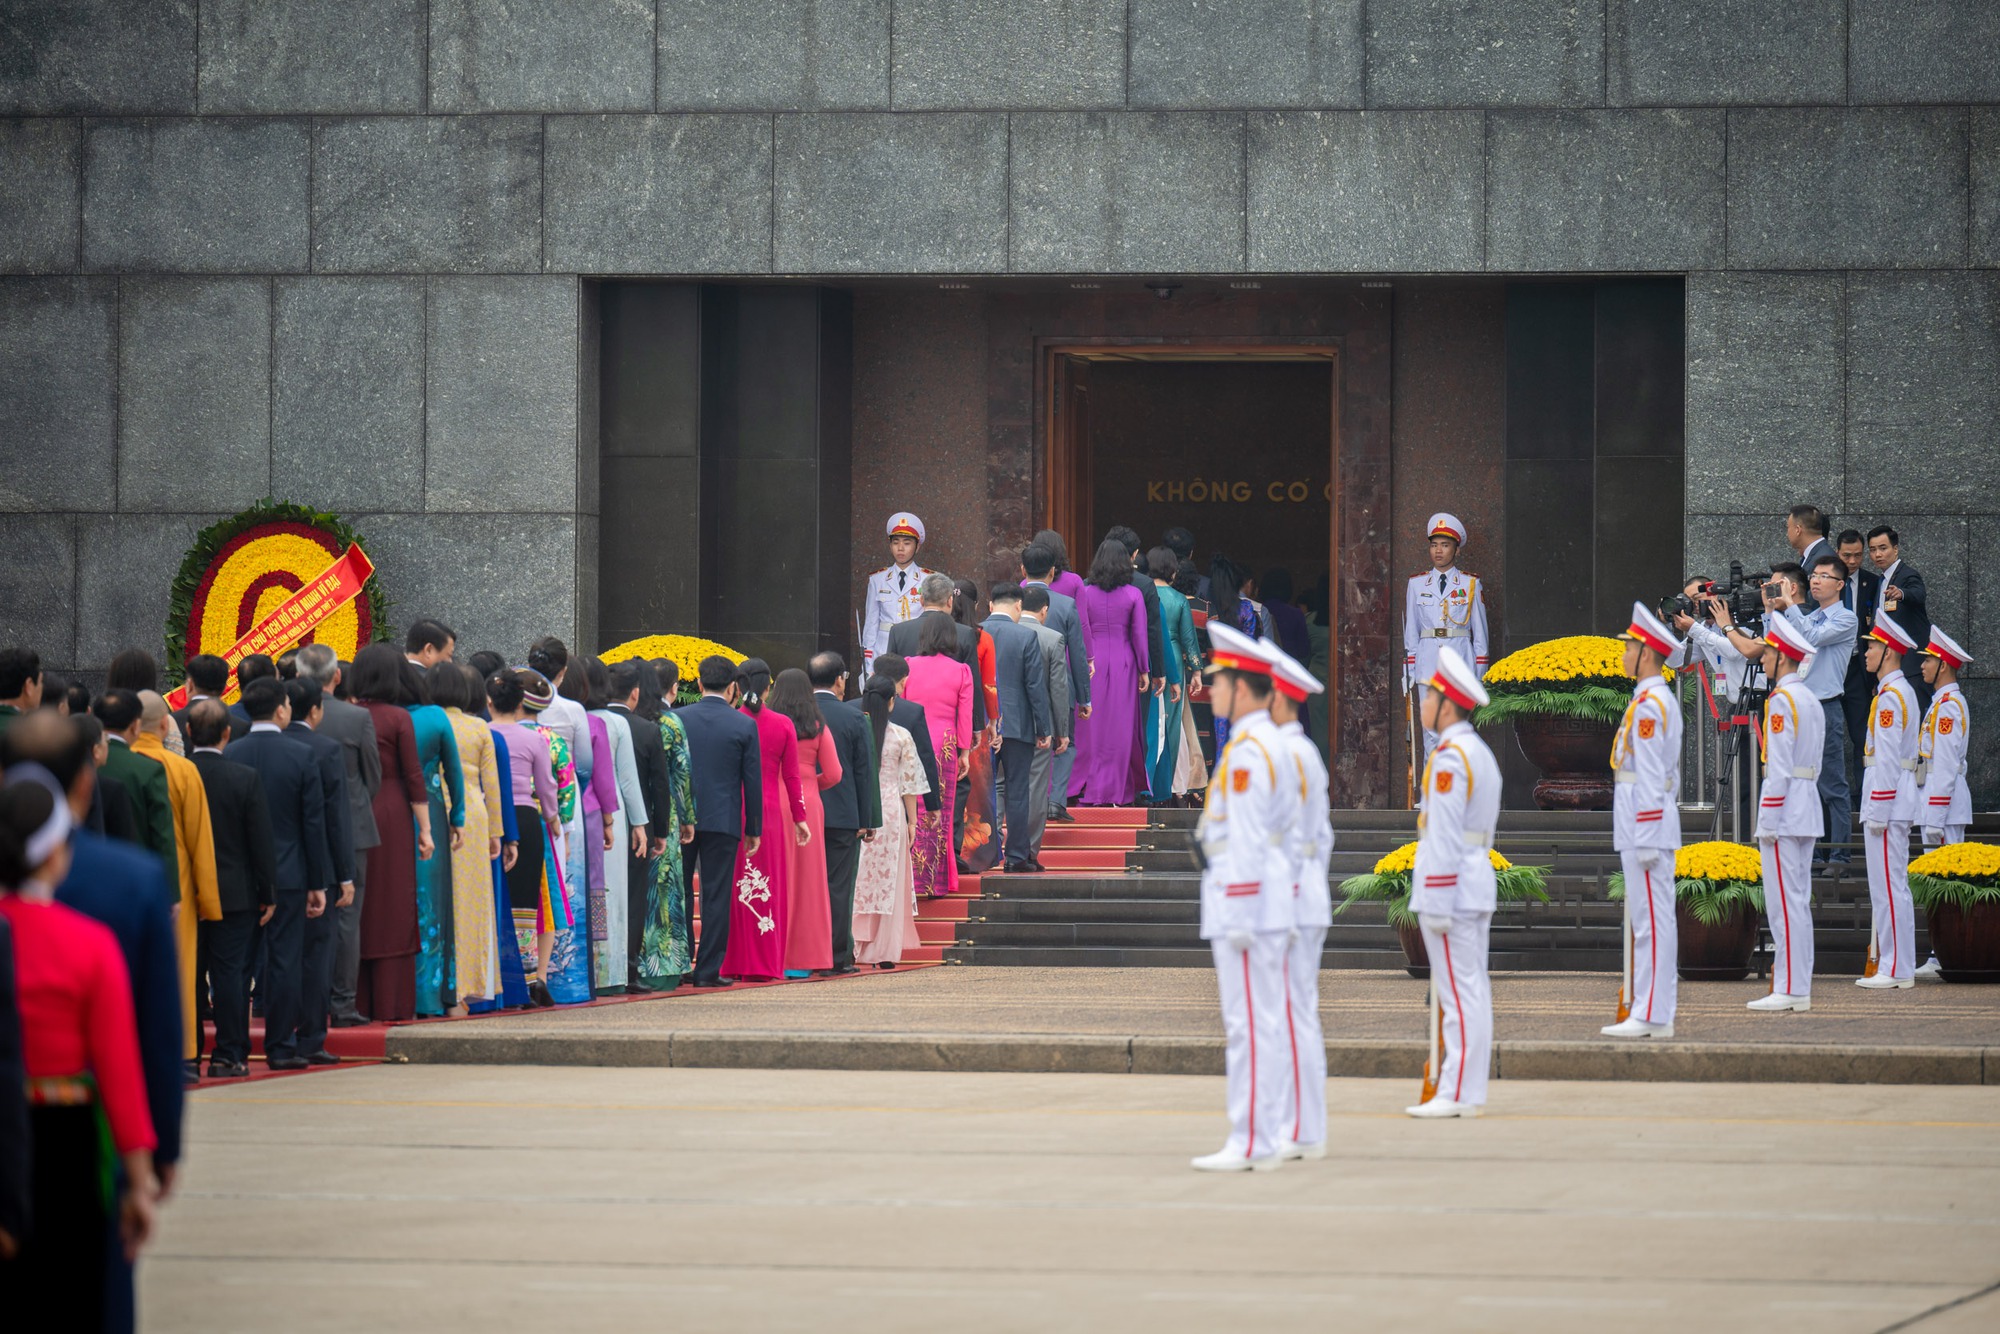 Lãnh đạo Đảng, Nhà nước và các đại biểu Quốc hội vào Lăng viếng Chủ tịch Hồ Chí Minh trước khai mạc Kỳ họp thứ 7, Quốc hội khóa XV - Ảnh 12.